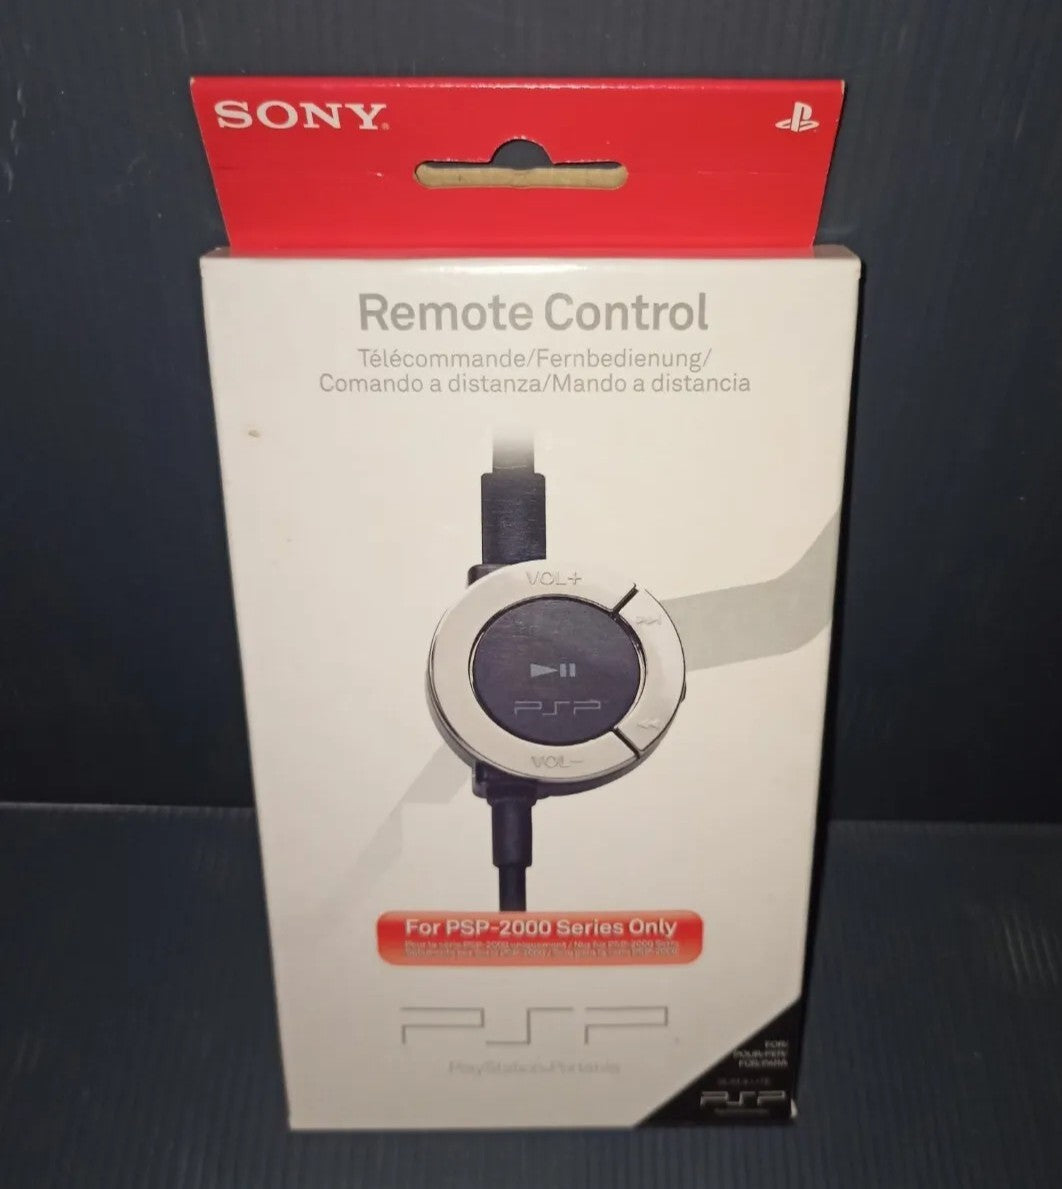 Remote Control Comando a distanza PSP Sony